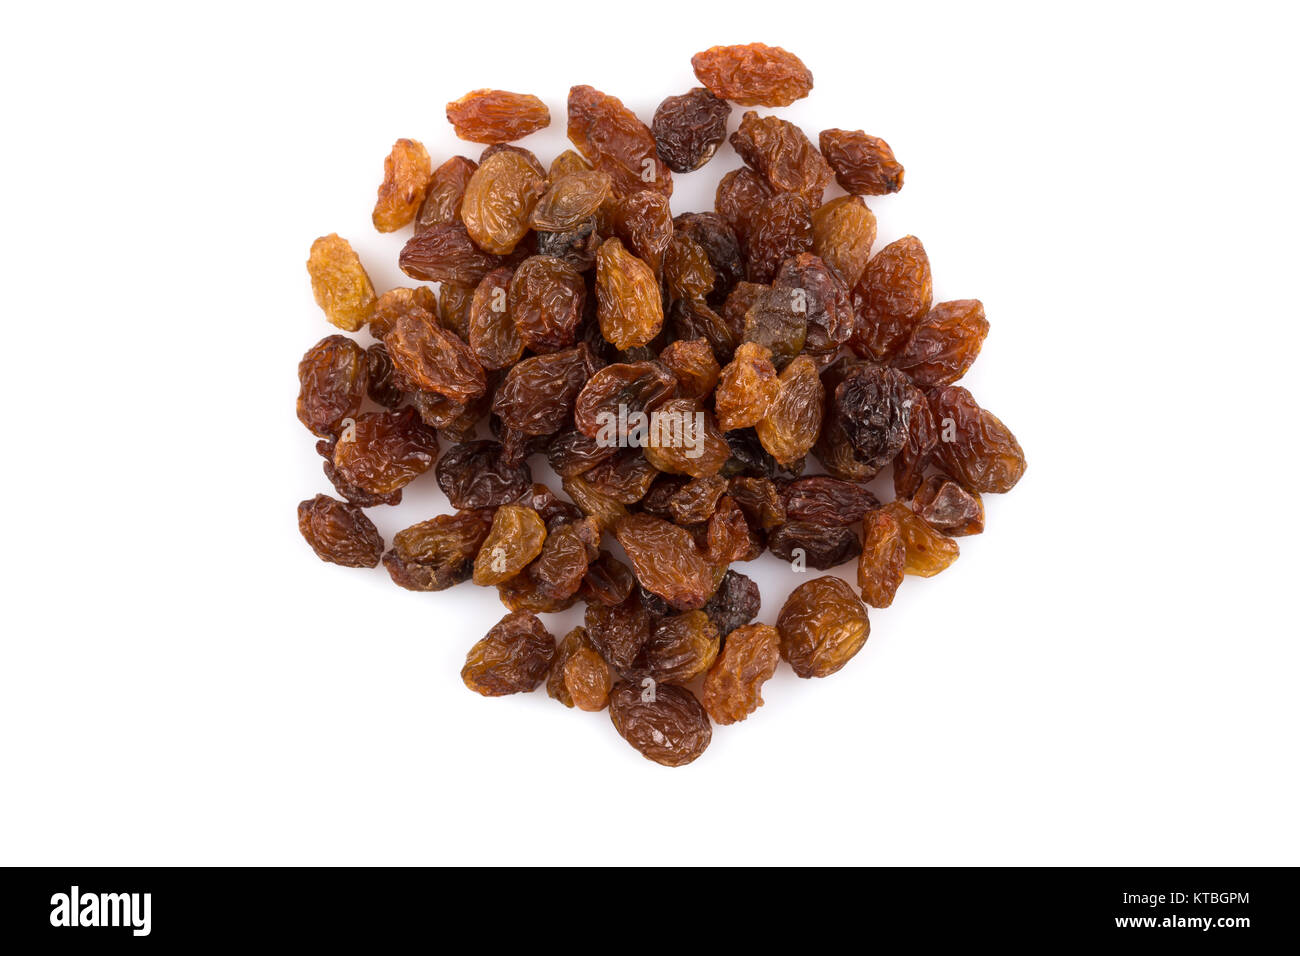 Sweet raisins on white Stock Photo - Alamy